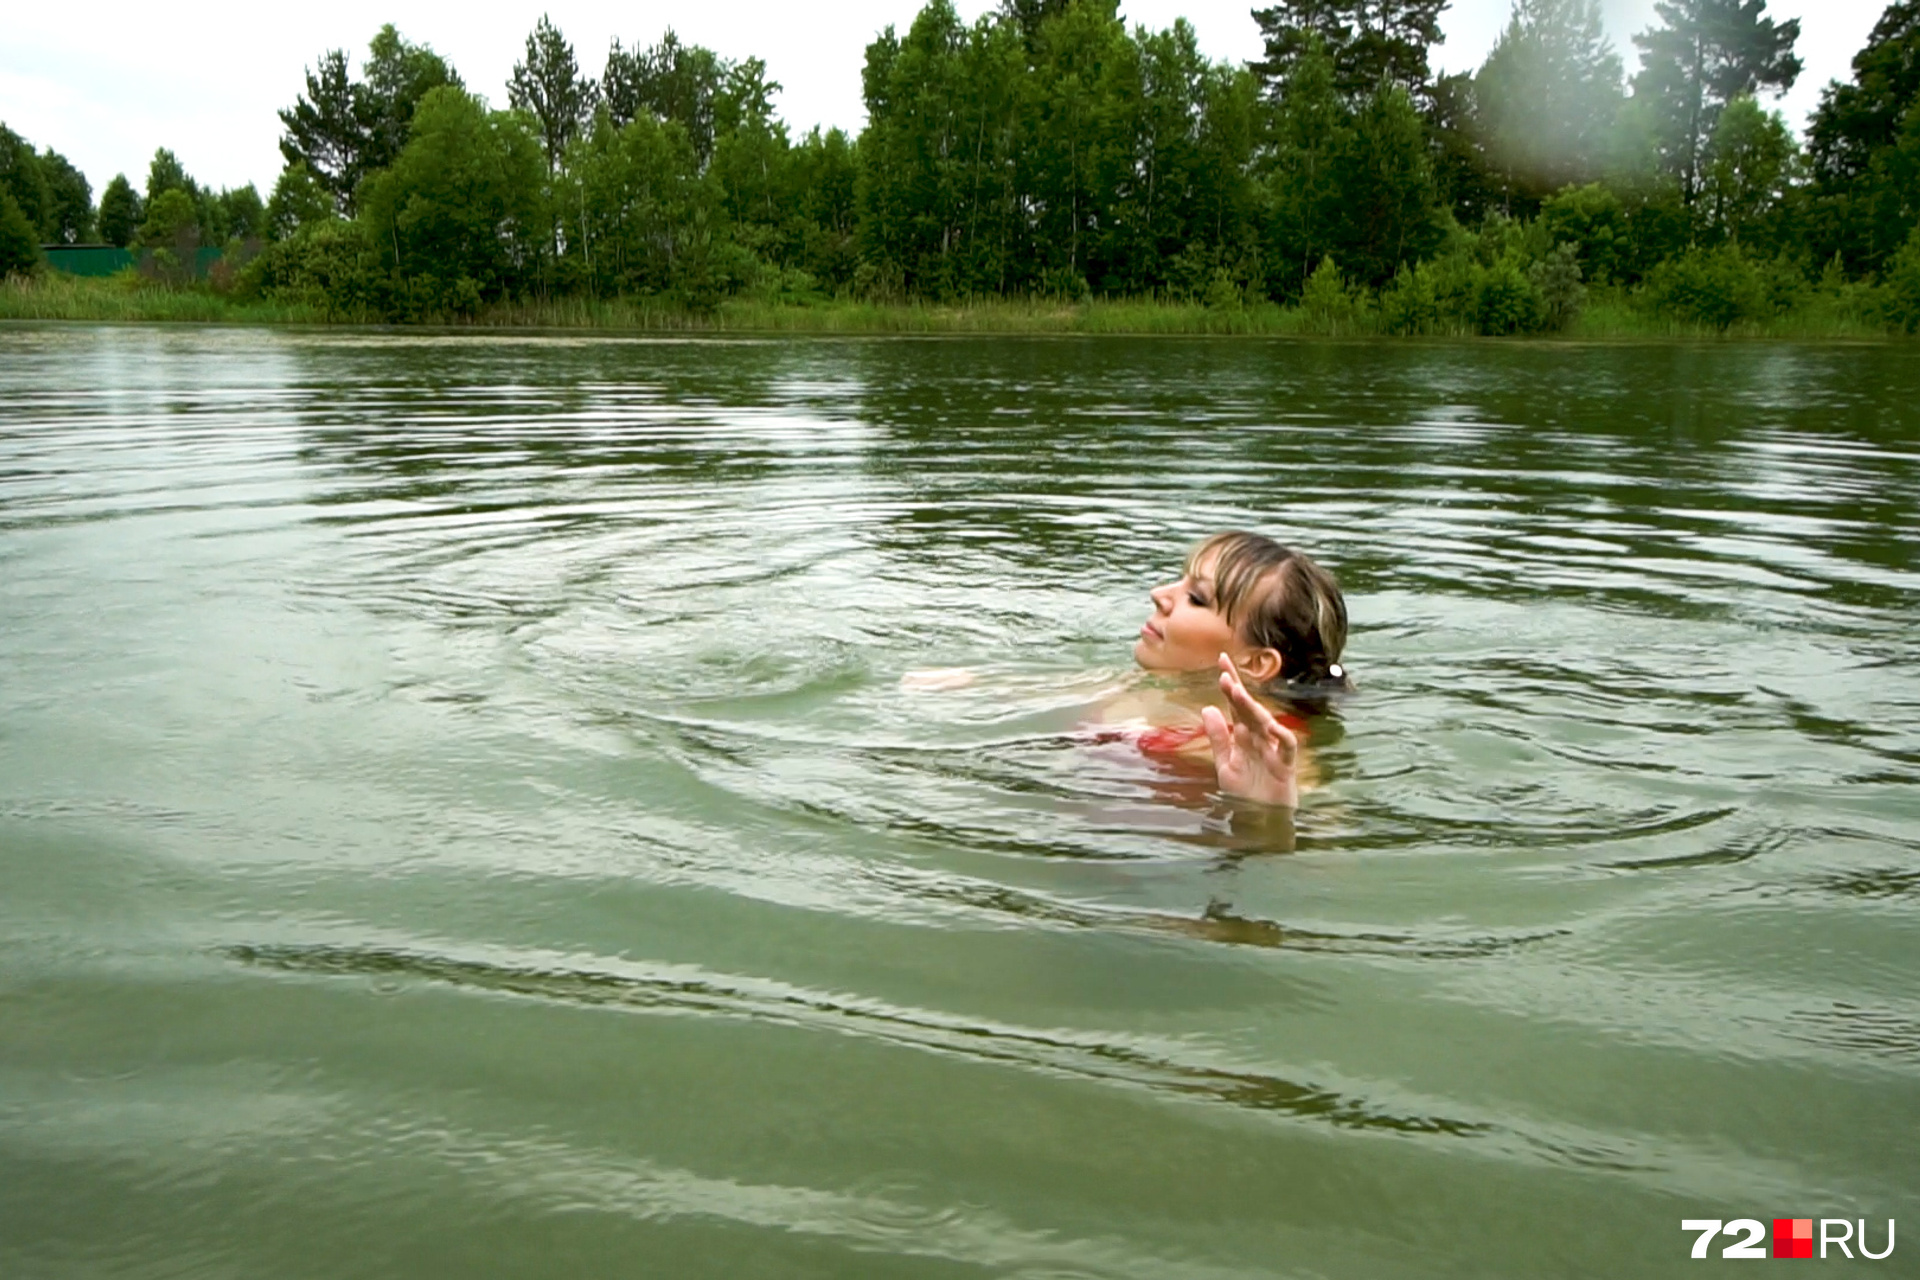 Само купание. Купаться в озере. Купание в реке. Девушки купаются в озере. Люди купаются в озере.